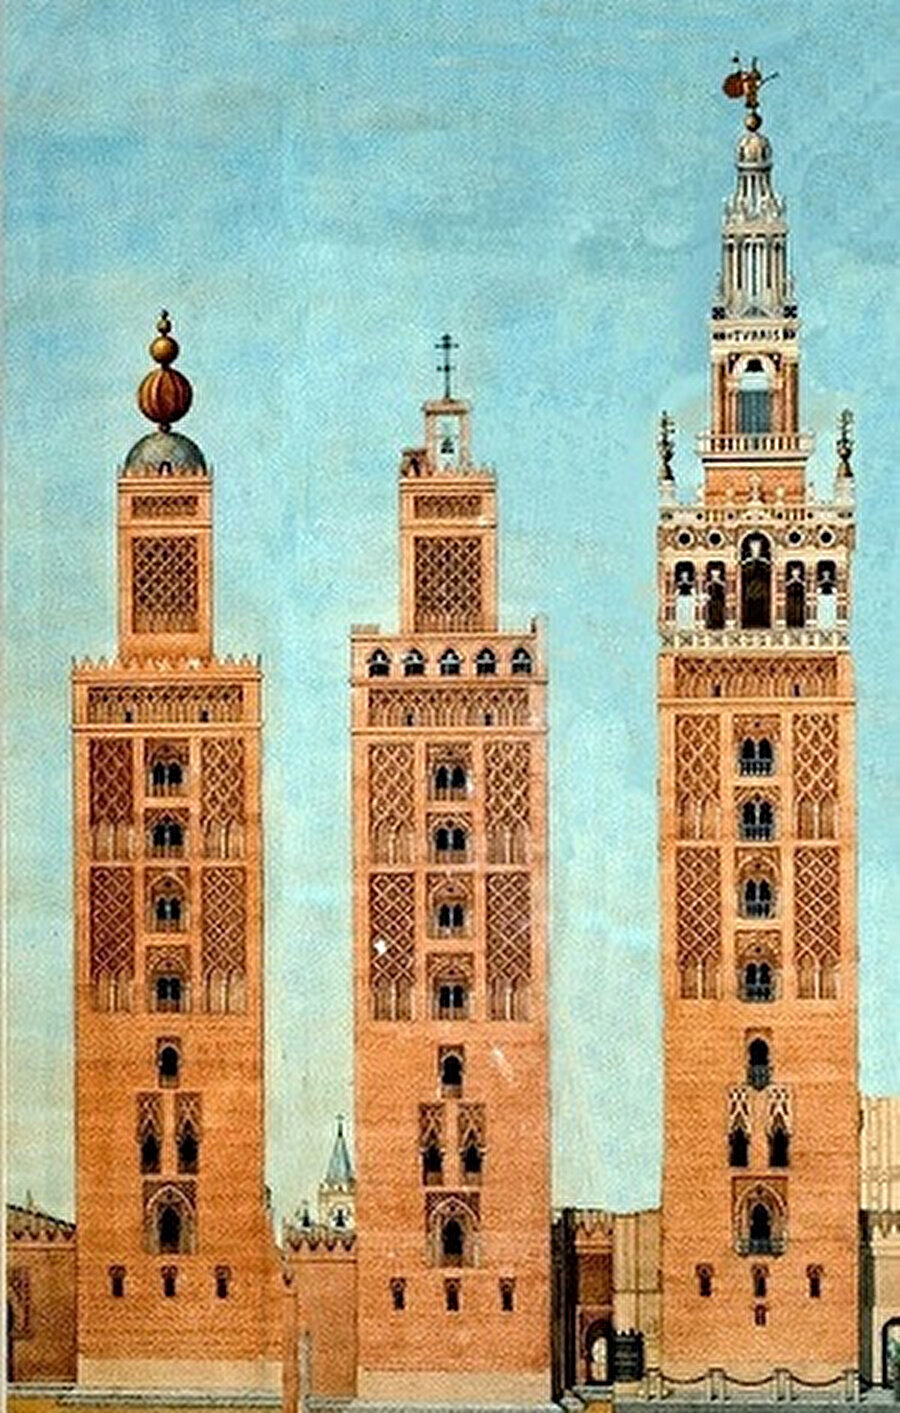 İşbîliye Ulucamii'nin 1198'deki minaresi (solda), ilk önce Hristiyan zaferini sembolize eden 4 adet bakır yıldız ile süslendi (ortada,1400), 1507'de ise üst tarafı yıkılarak, bir çan eklenmesi ile çan kulesine çevrildi (sağda).